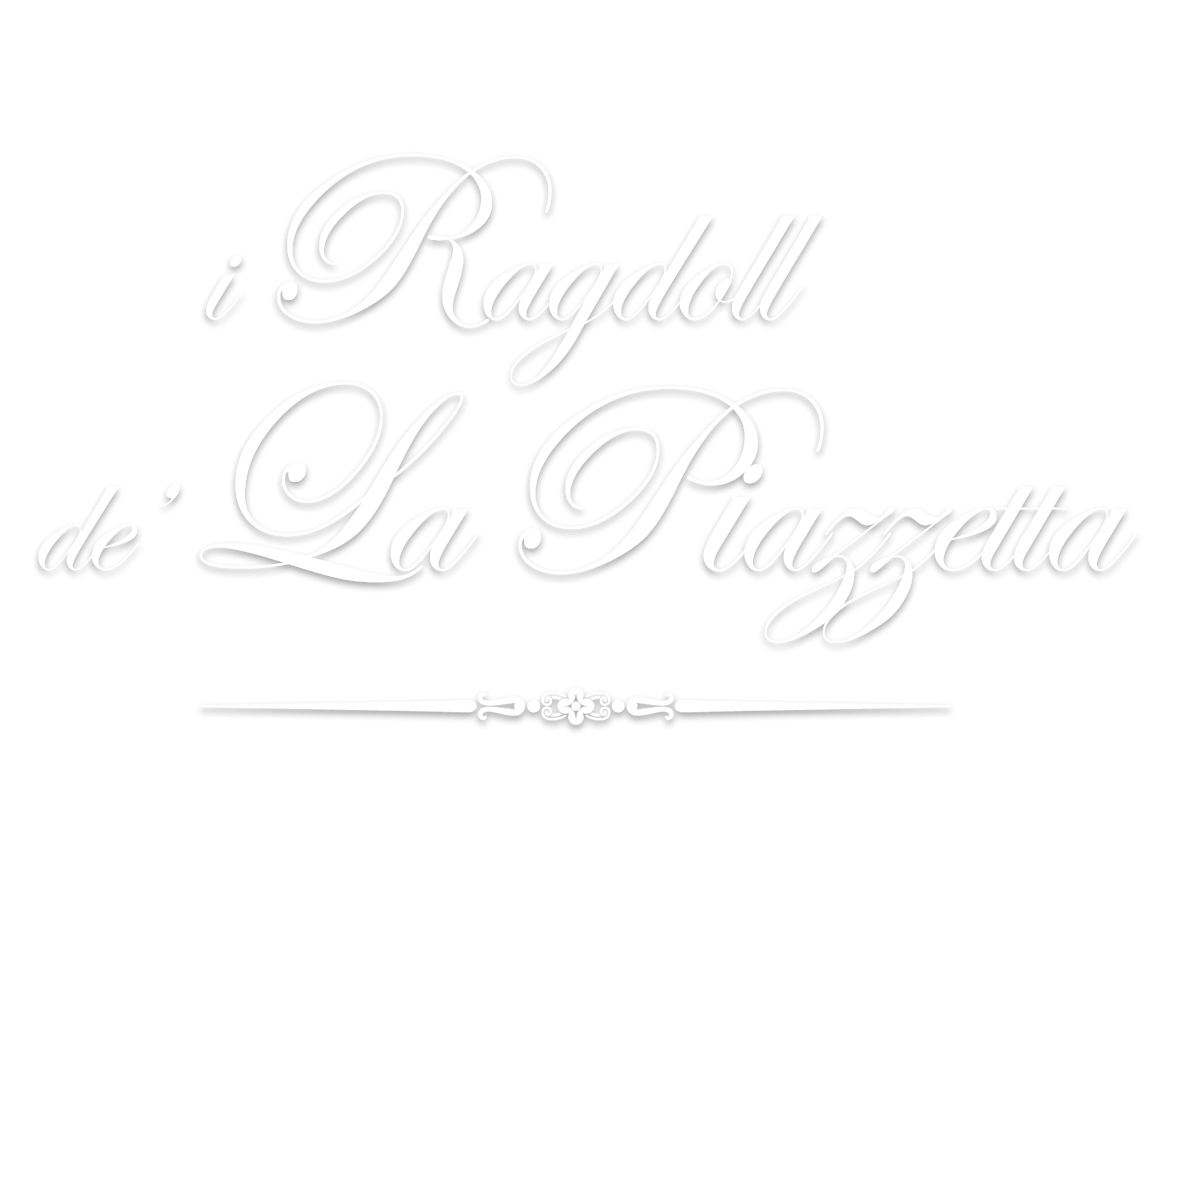 i Regdoll de' La Piazzetta